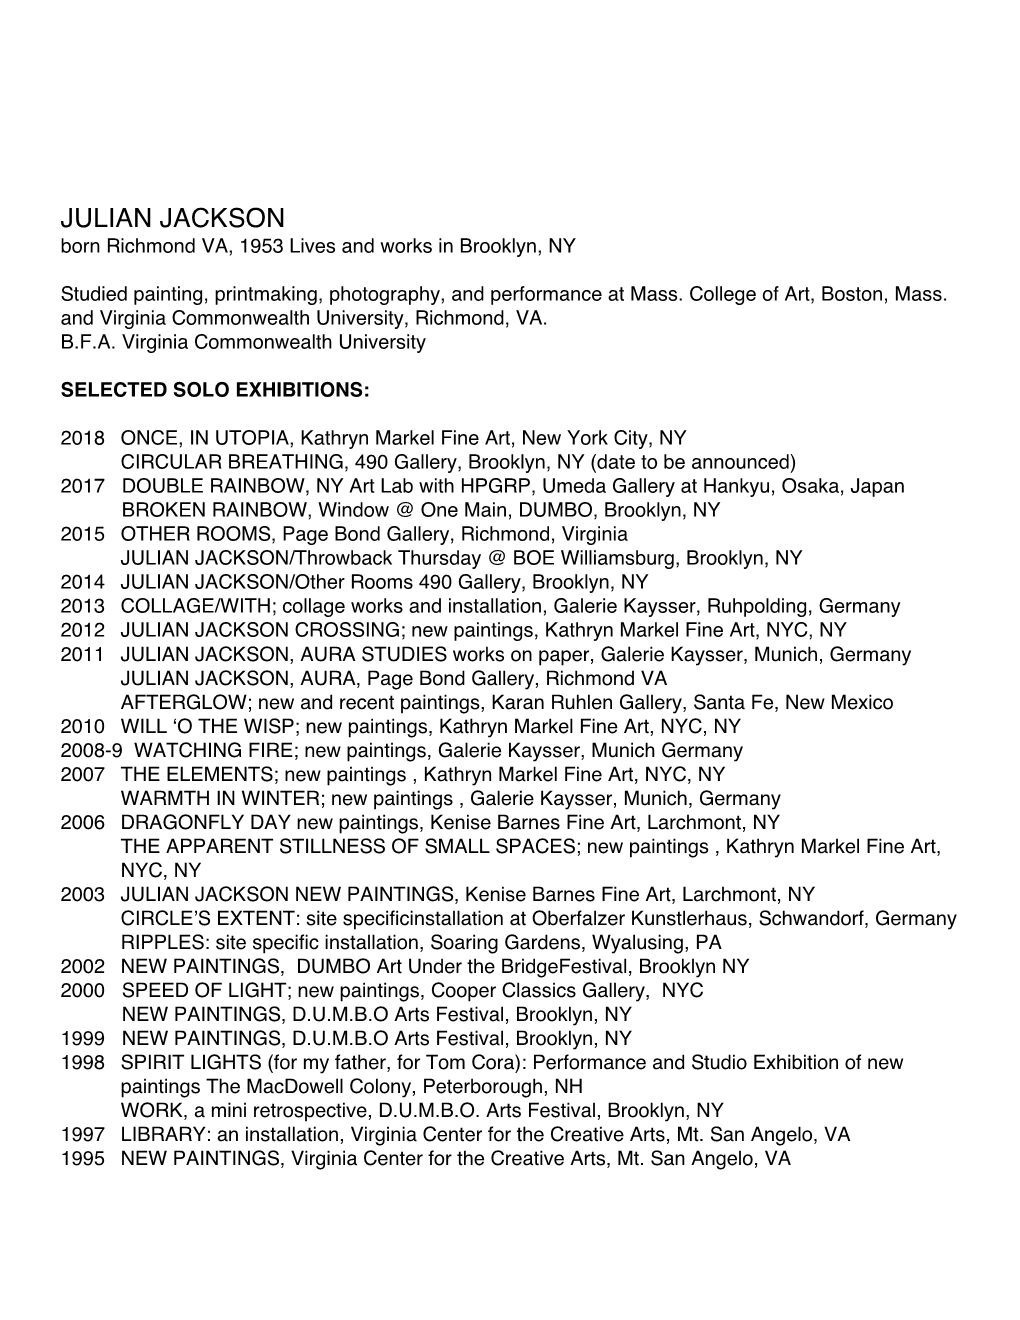 JULIAN JACKSON Born Richmond VA, 1953 Lives and Works in Brooklyn, NY